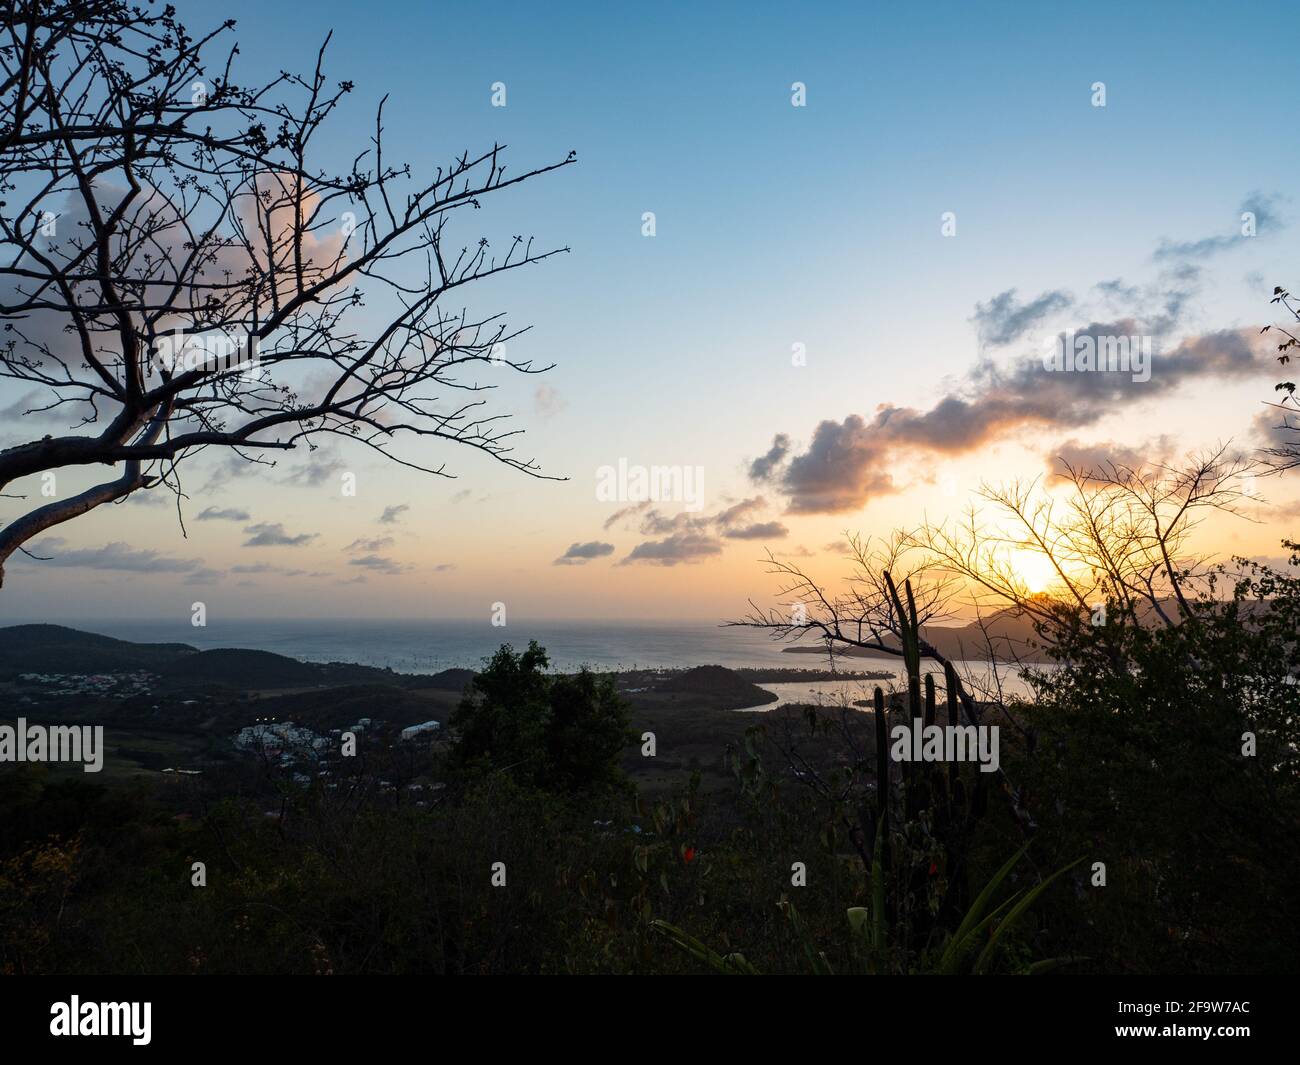 La bahía de Marin es una de las más hermosas Bahías de Martinica Foto de stock